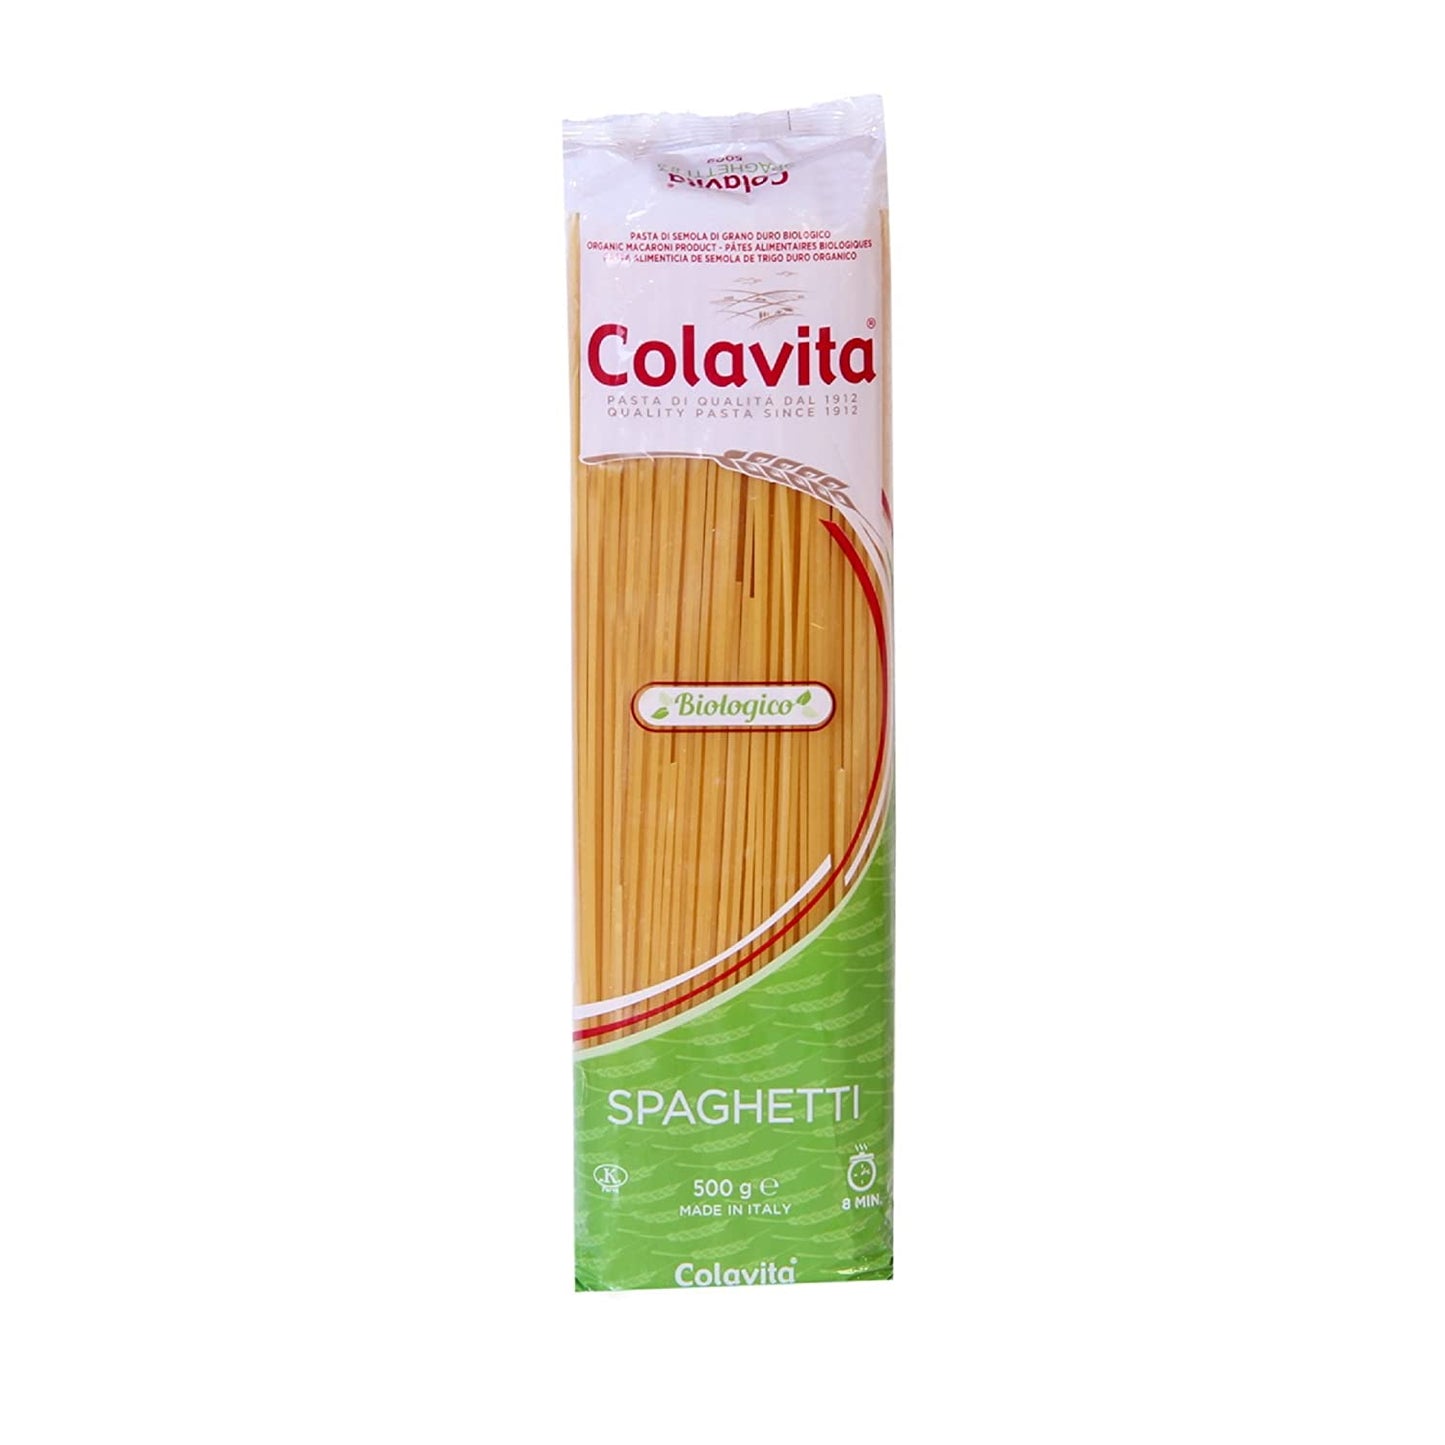 Colavita Spaghetti Organic Pasta, 500 g